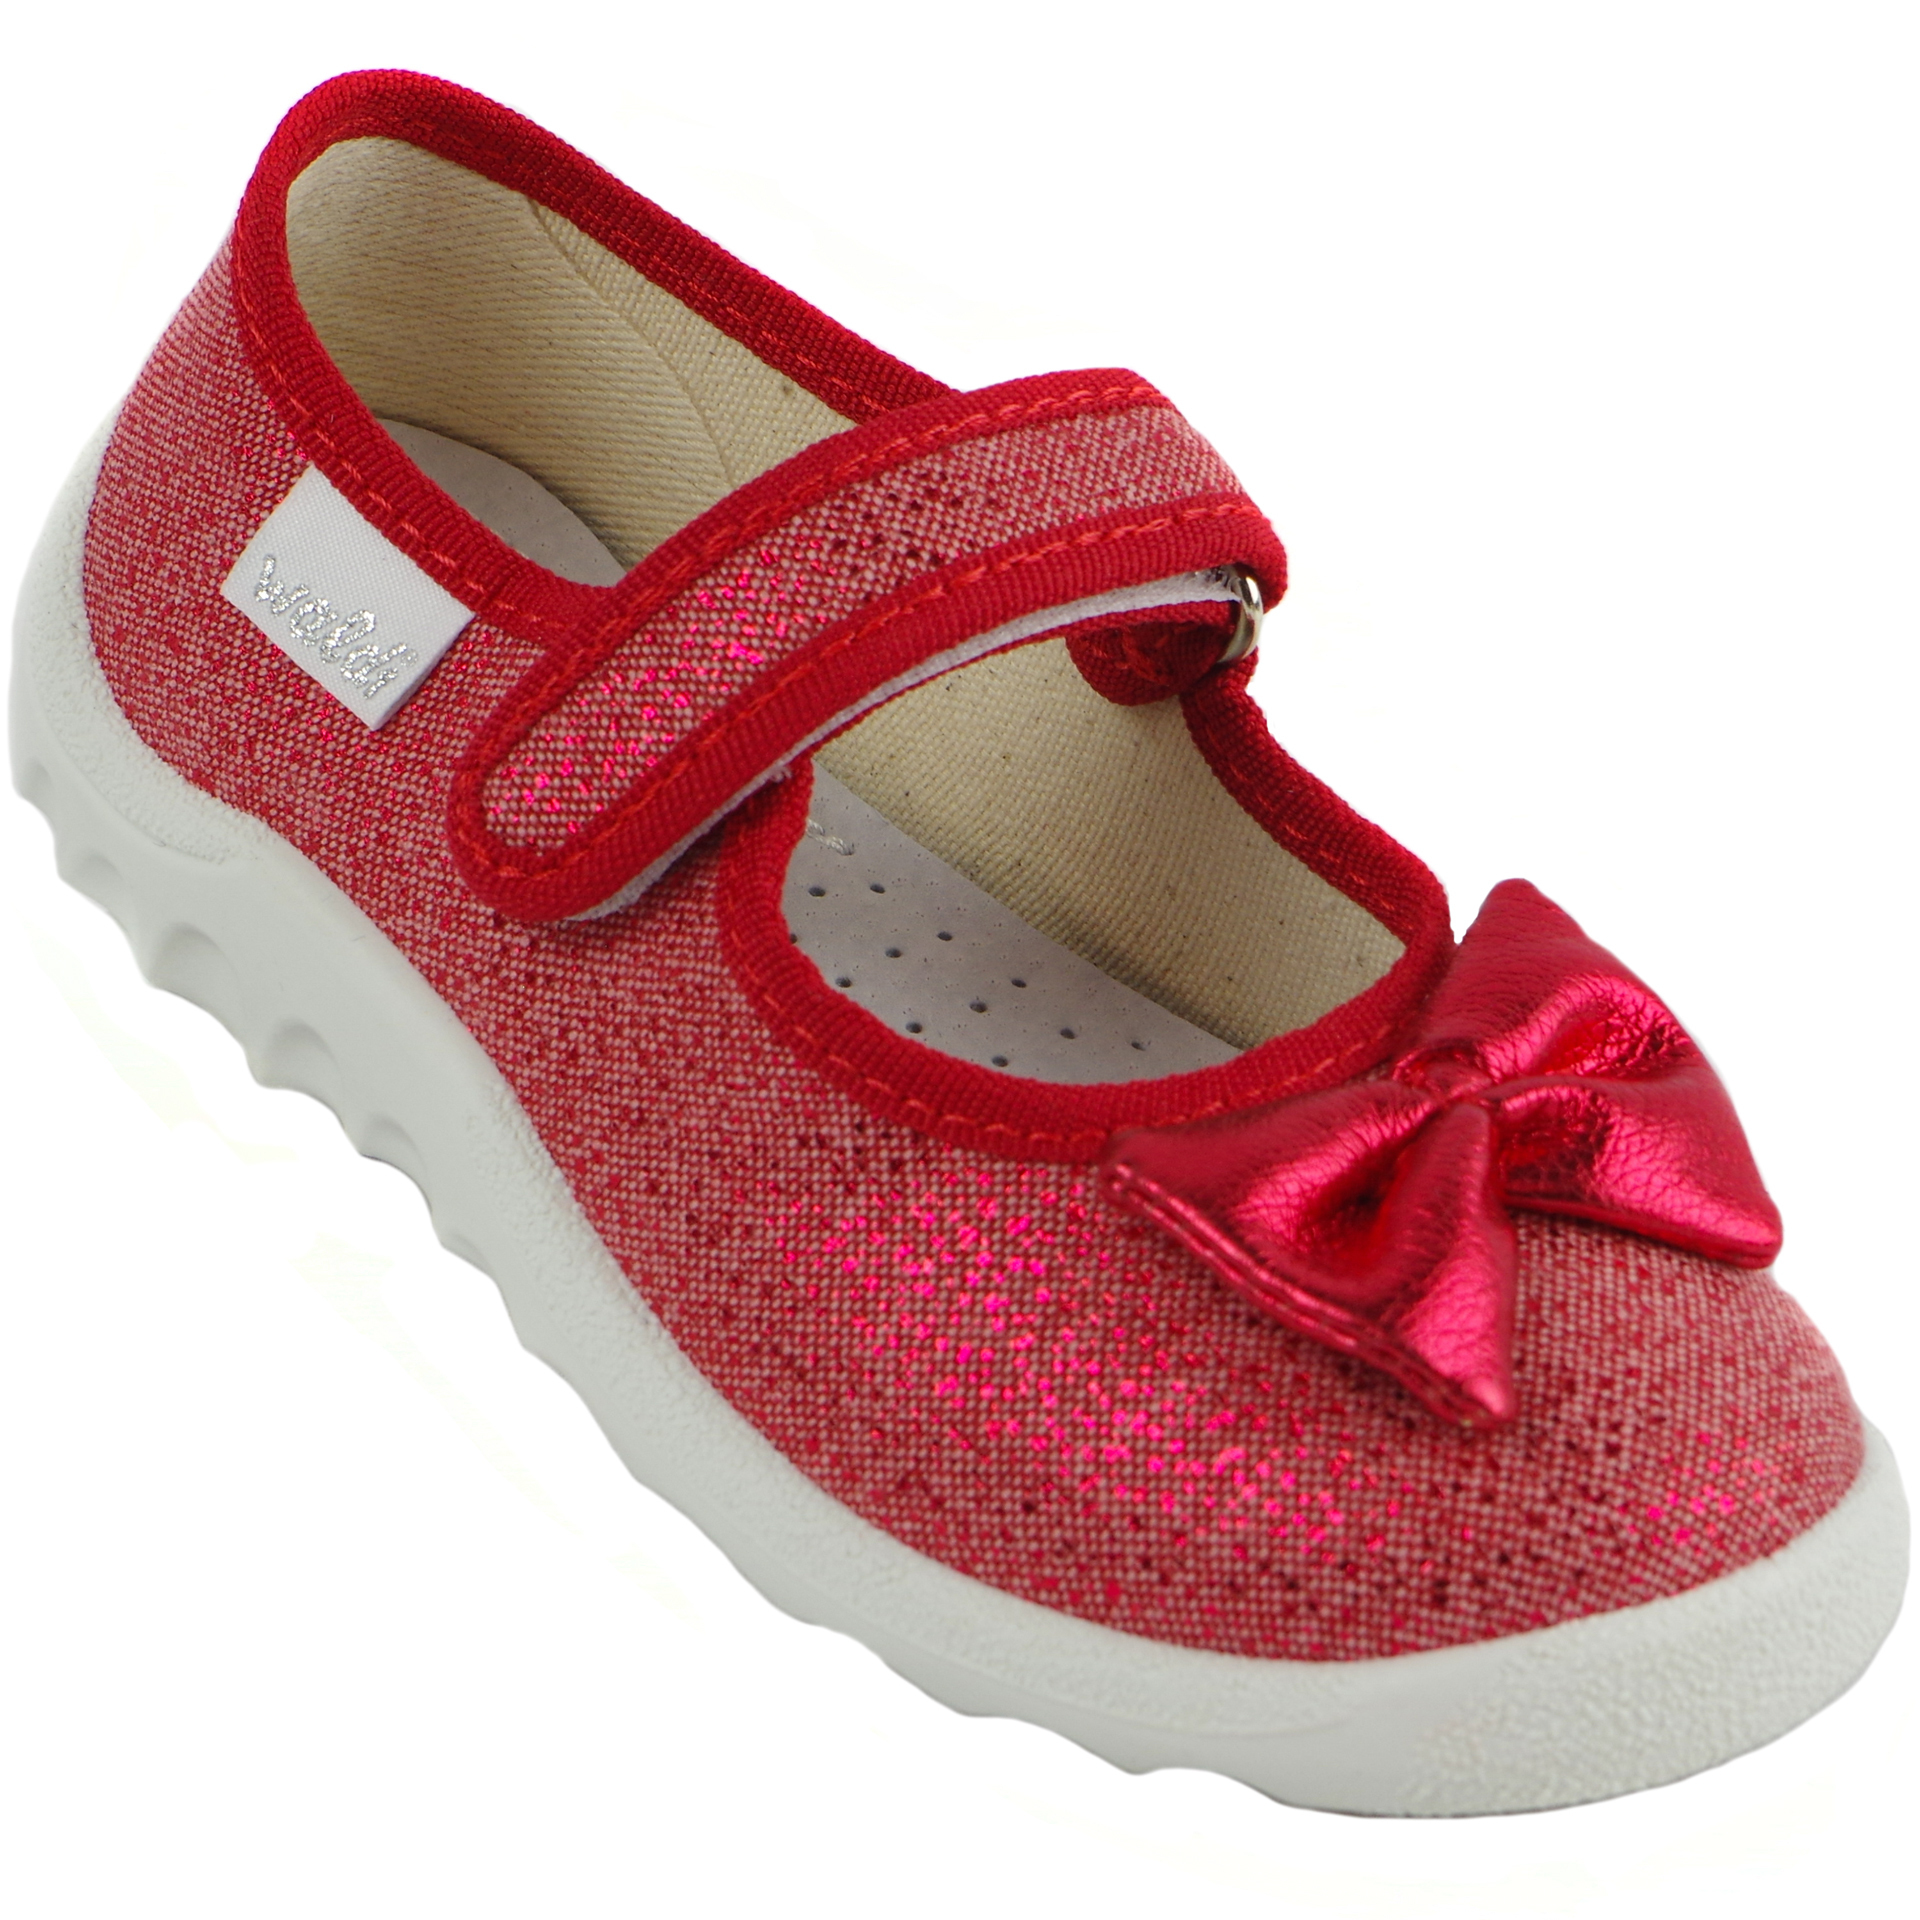 Текстильная обувь для девочек Тапочки Waldi (1407) цвет Красный 21-27 размеры – Sole Kids. Фото 1